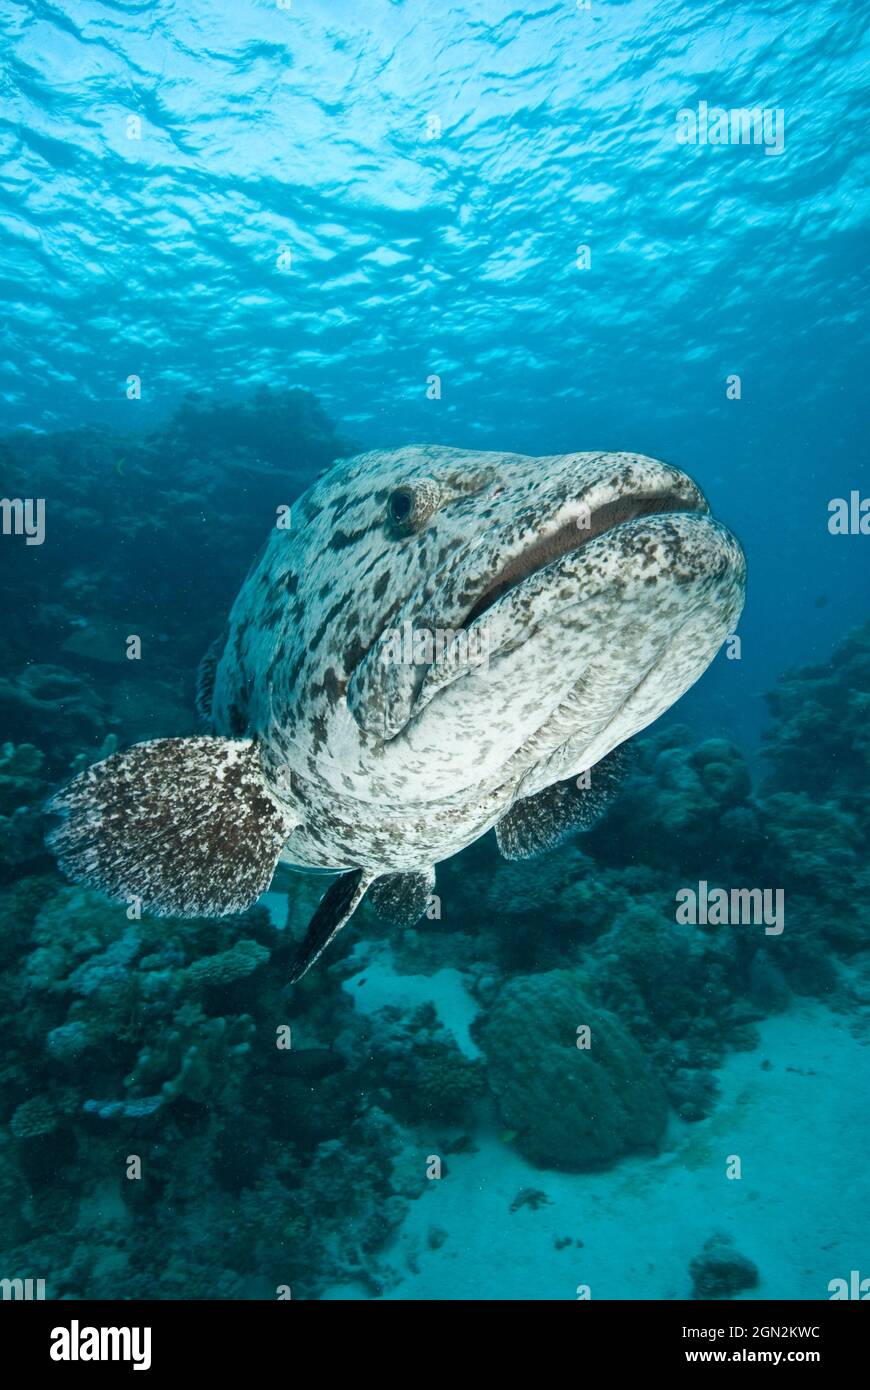 Merluzzo di patate (Epinephelus tukula), e subacqueo. I pesci giganti hanno riportato di raggiungere 200 cm e fino a 100 kg. Port Douglas, Queensland settentrionale, Australia Foto Stock